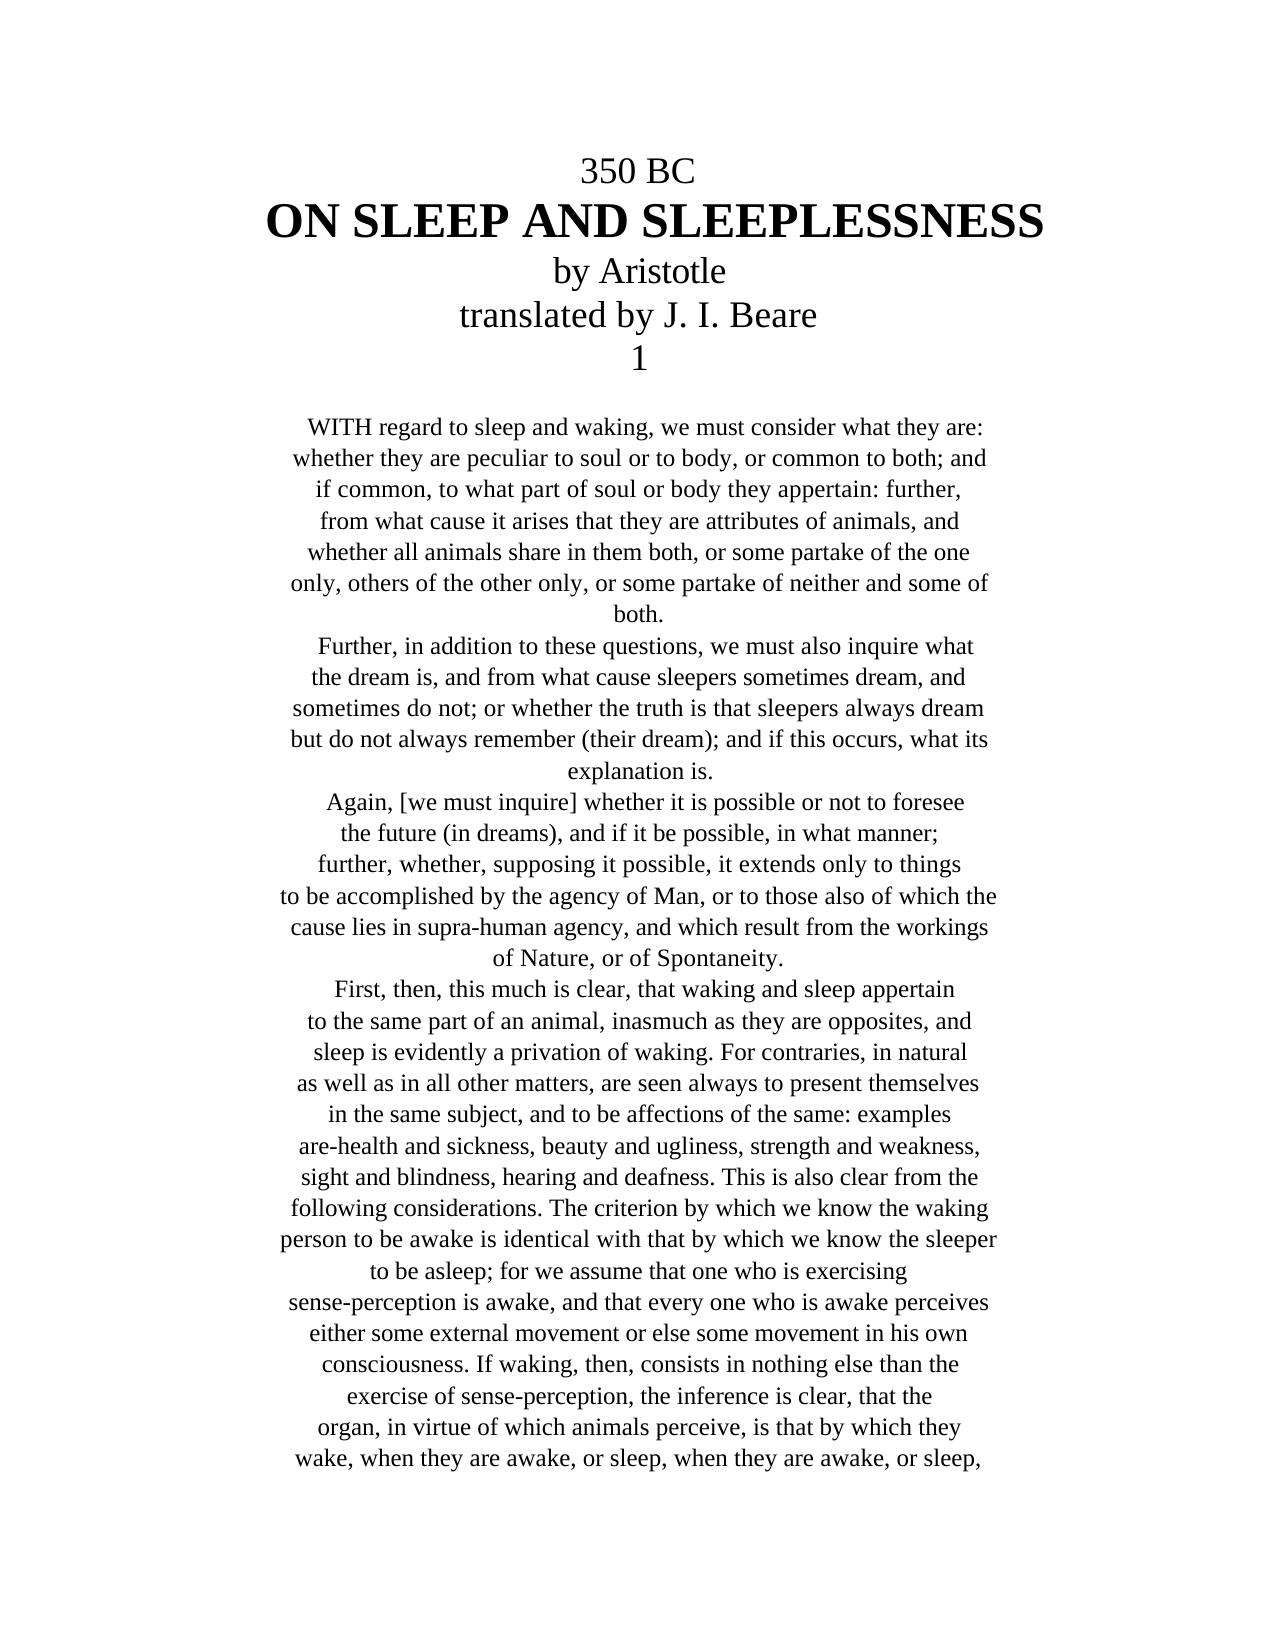 Aristotle On Sleep And Sleeplessness